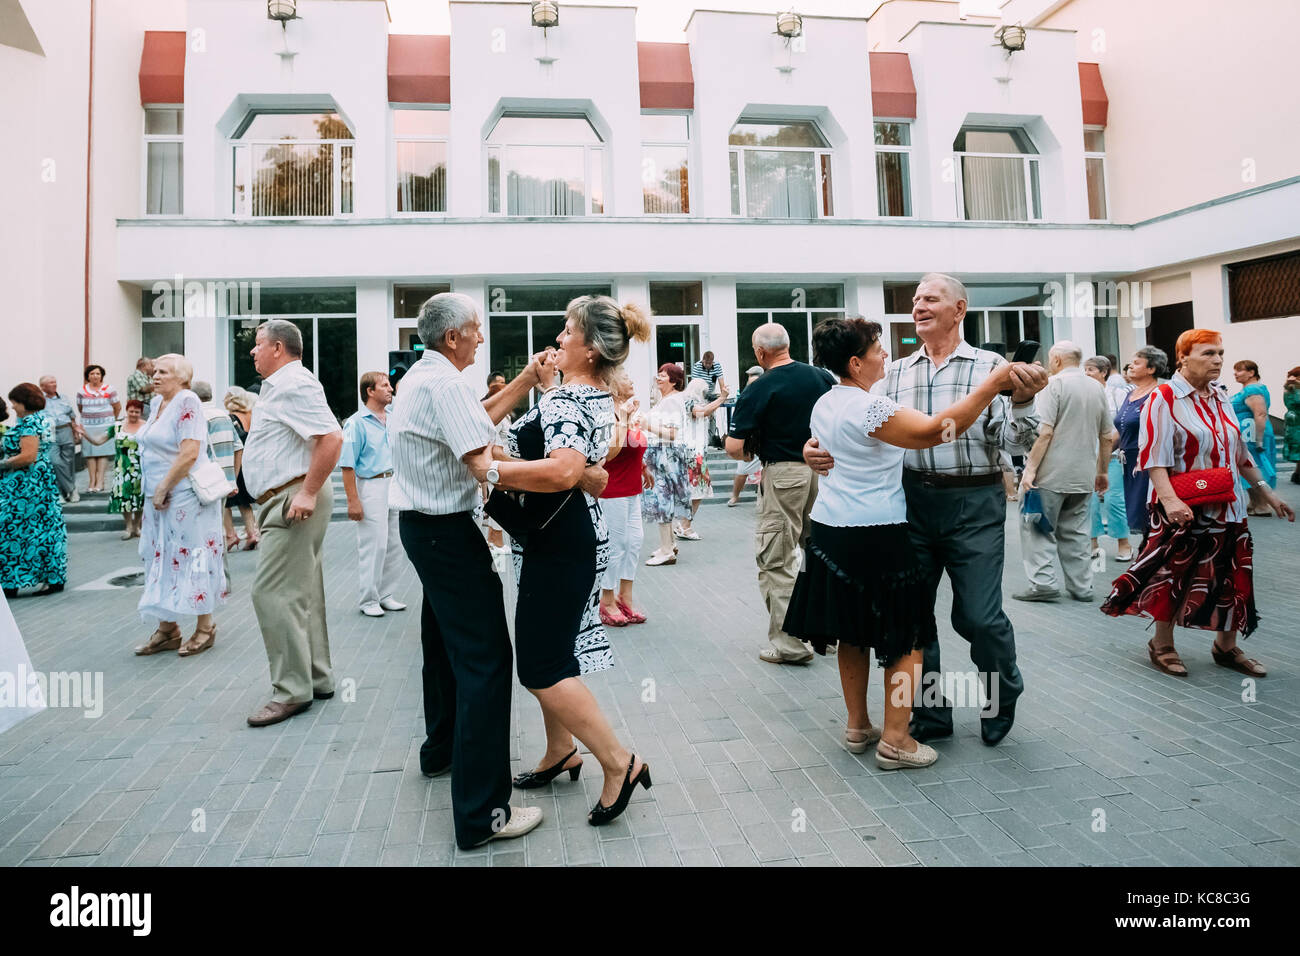 The Elderly People Dancing In Pairs On The Outdoor Dance Floor In ...